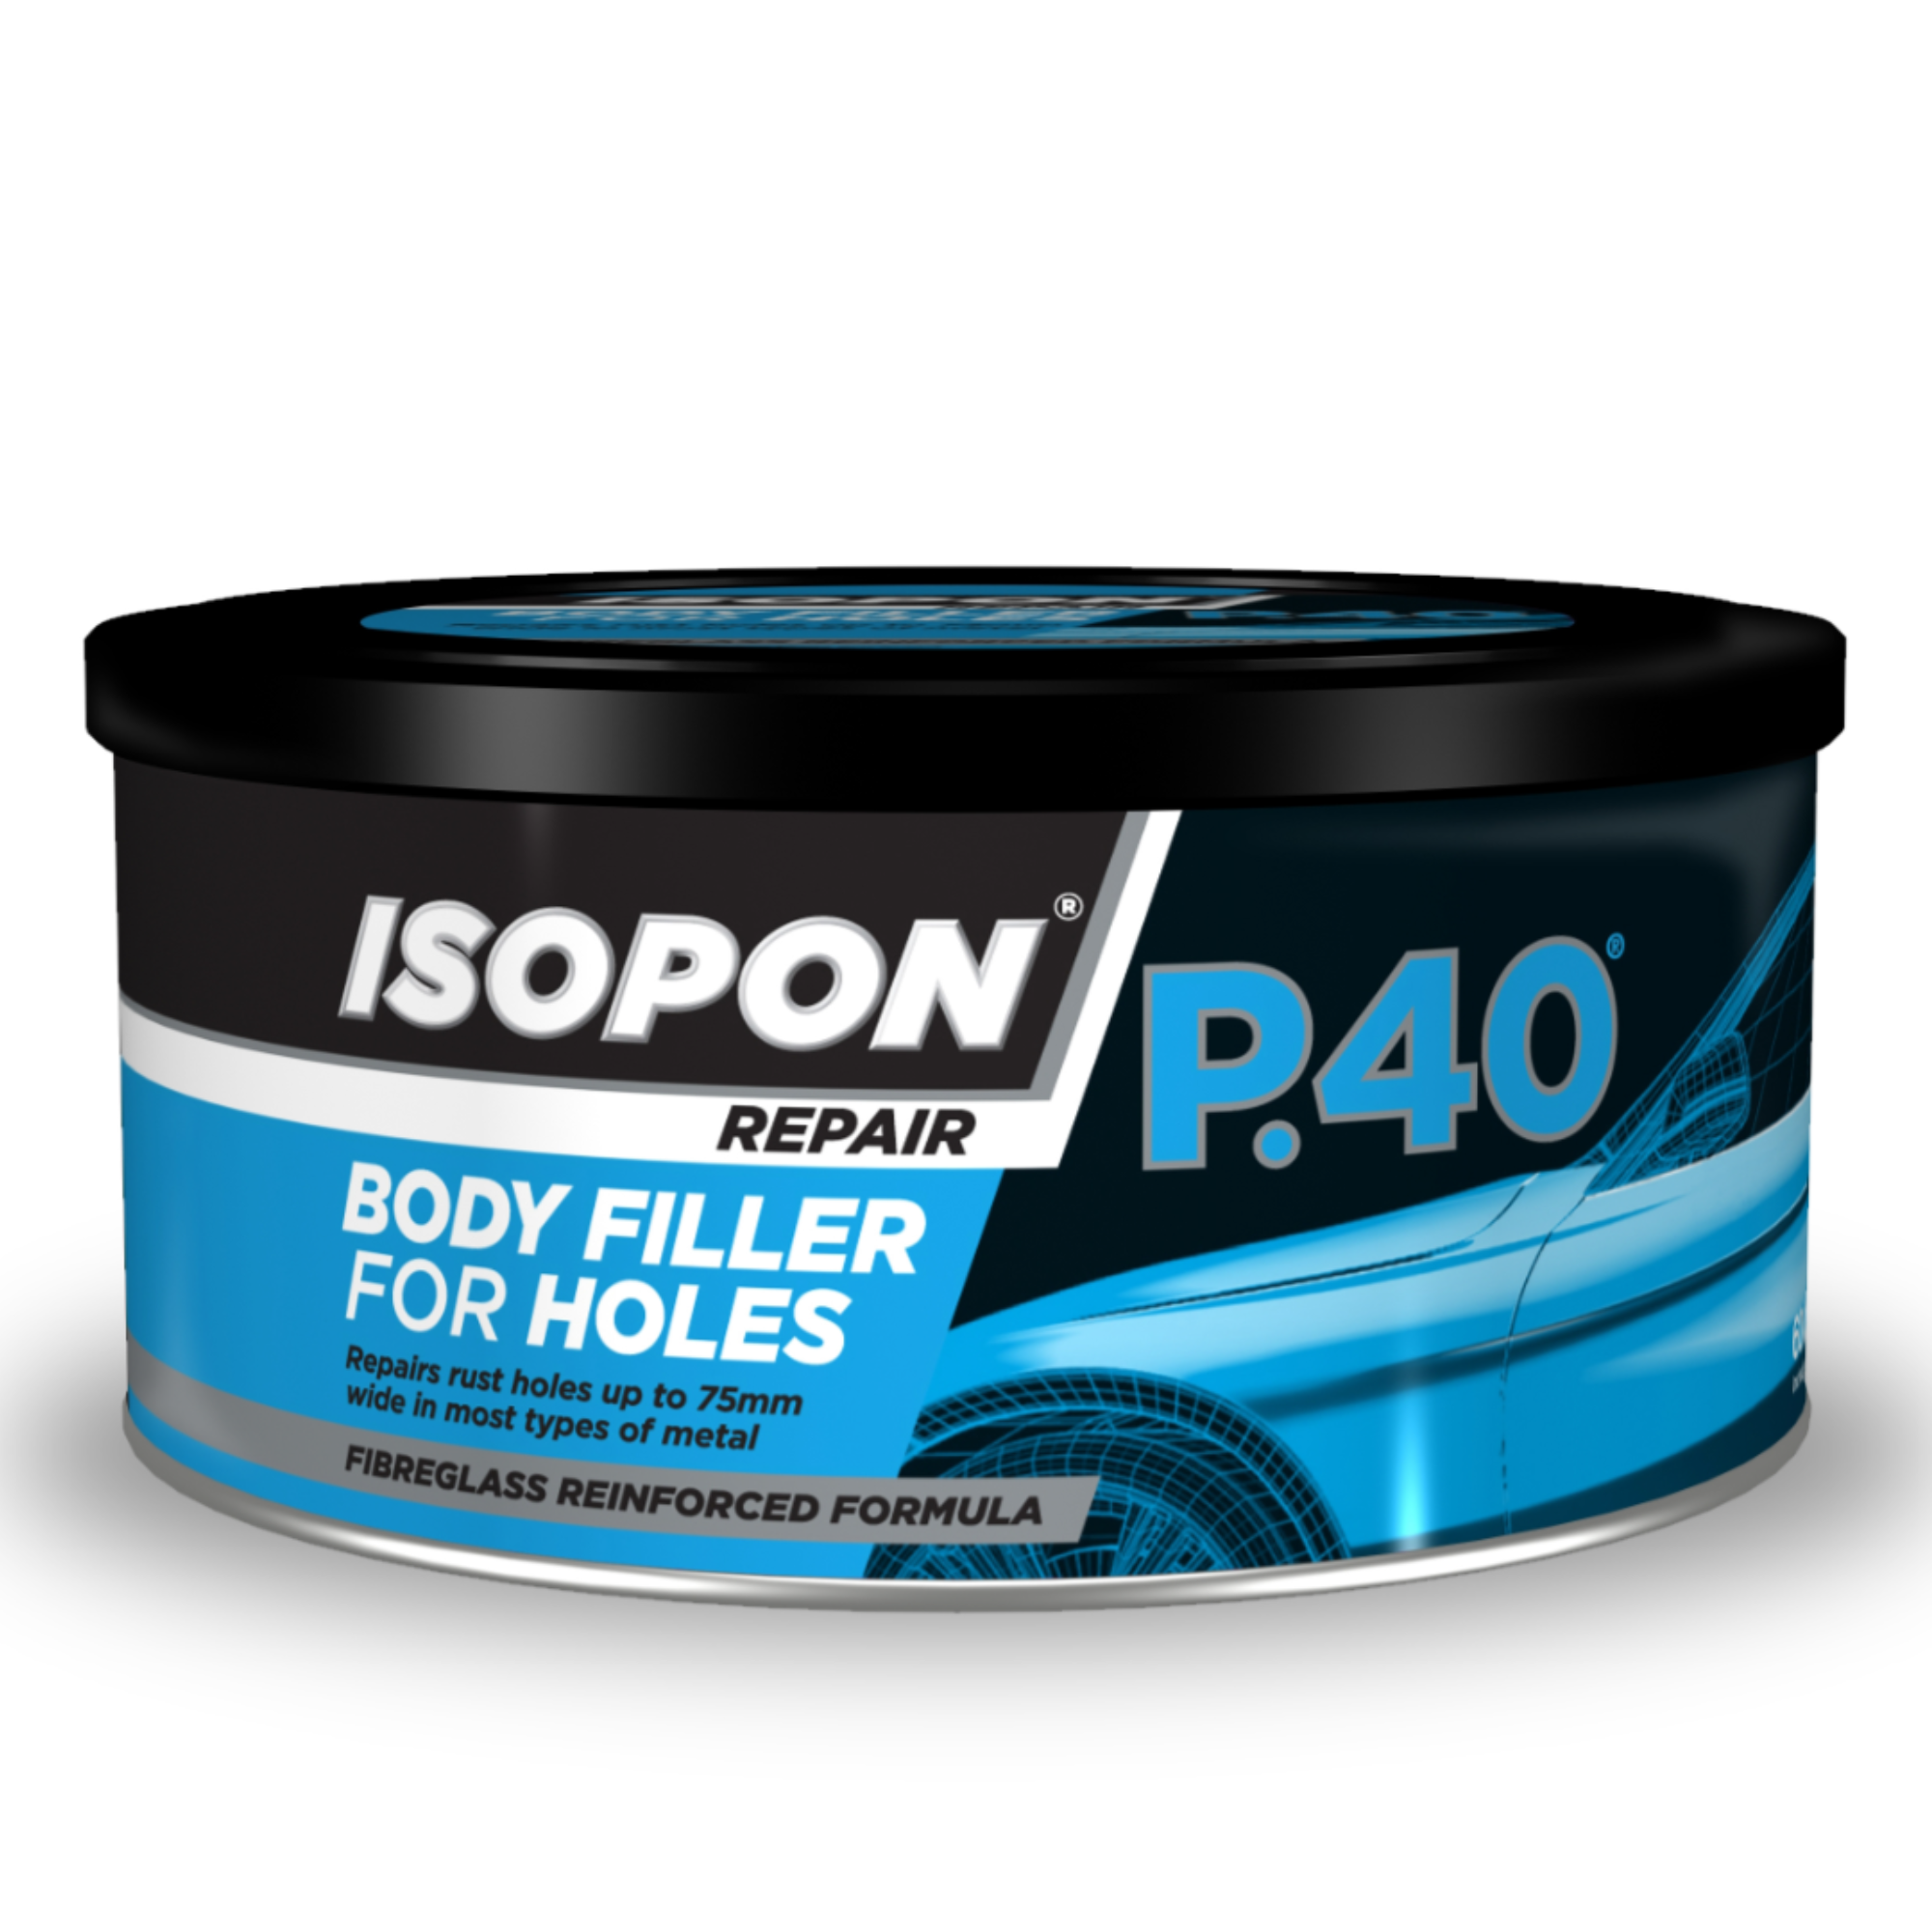 Isopon Repair P.40 Body Filler For Holes 600ml